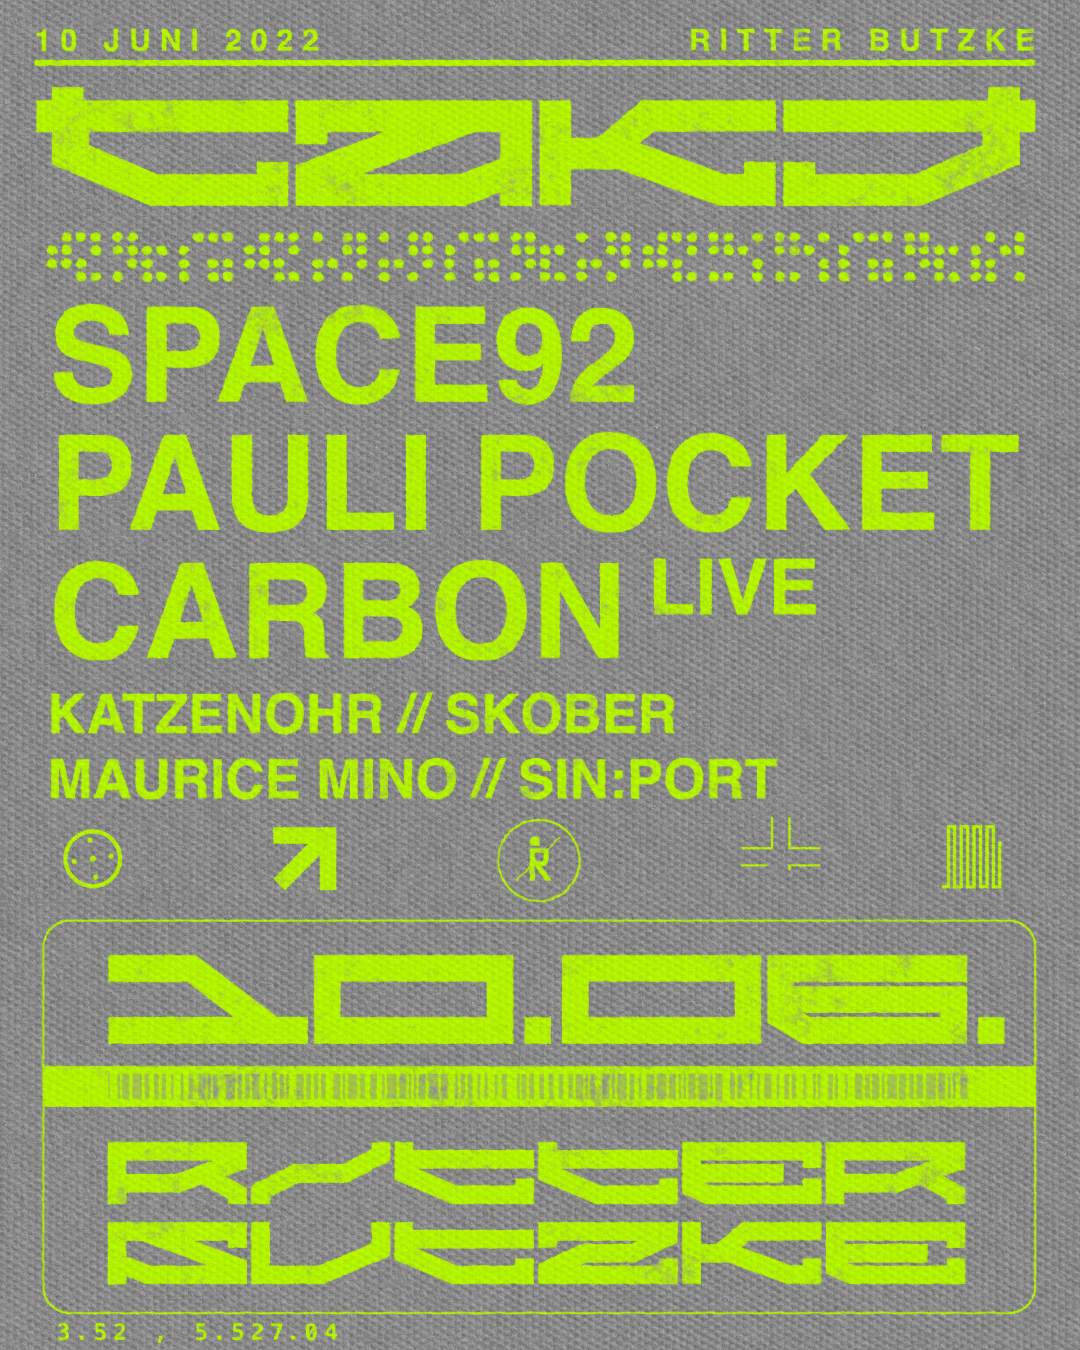 TAKT (Open Air & Indoor)/w Space92, Pauli Pocket, Skober, Carbon uvm. - フライヤー表